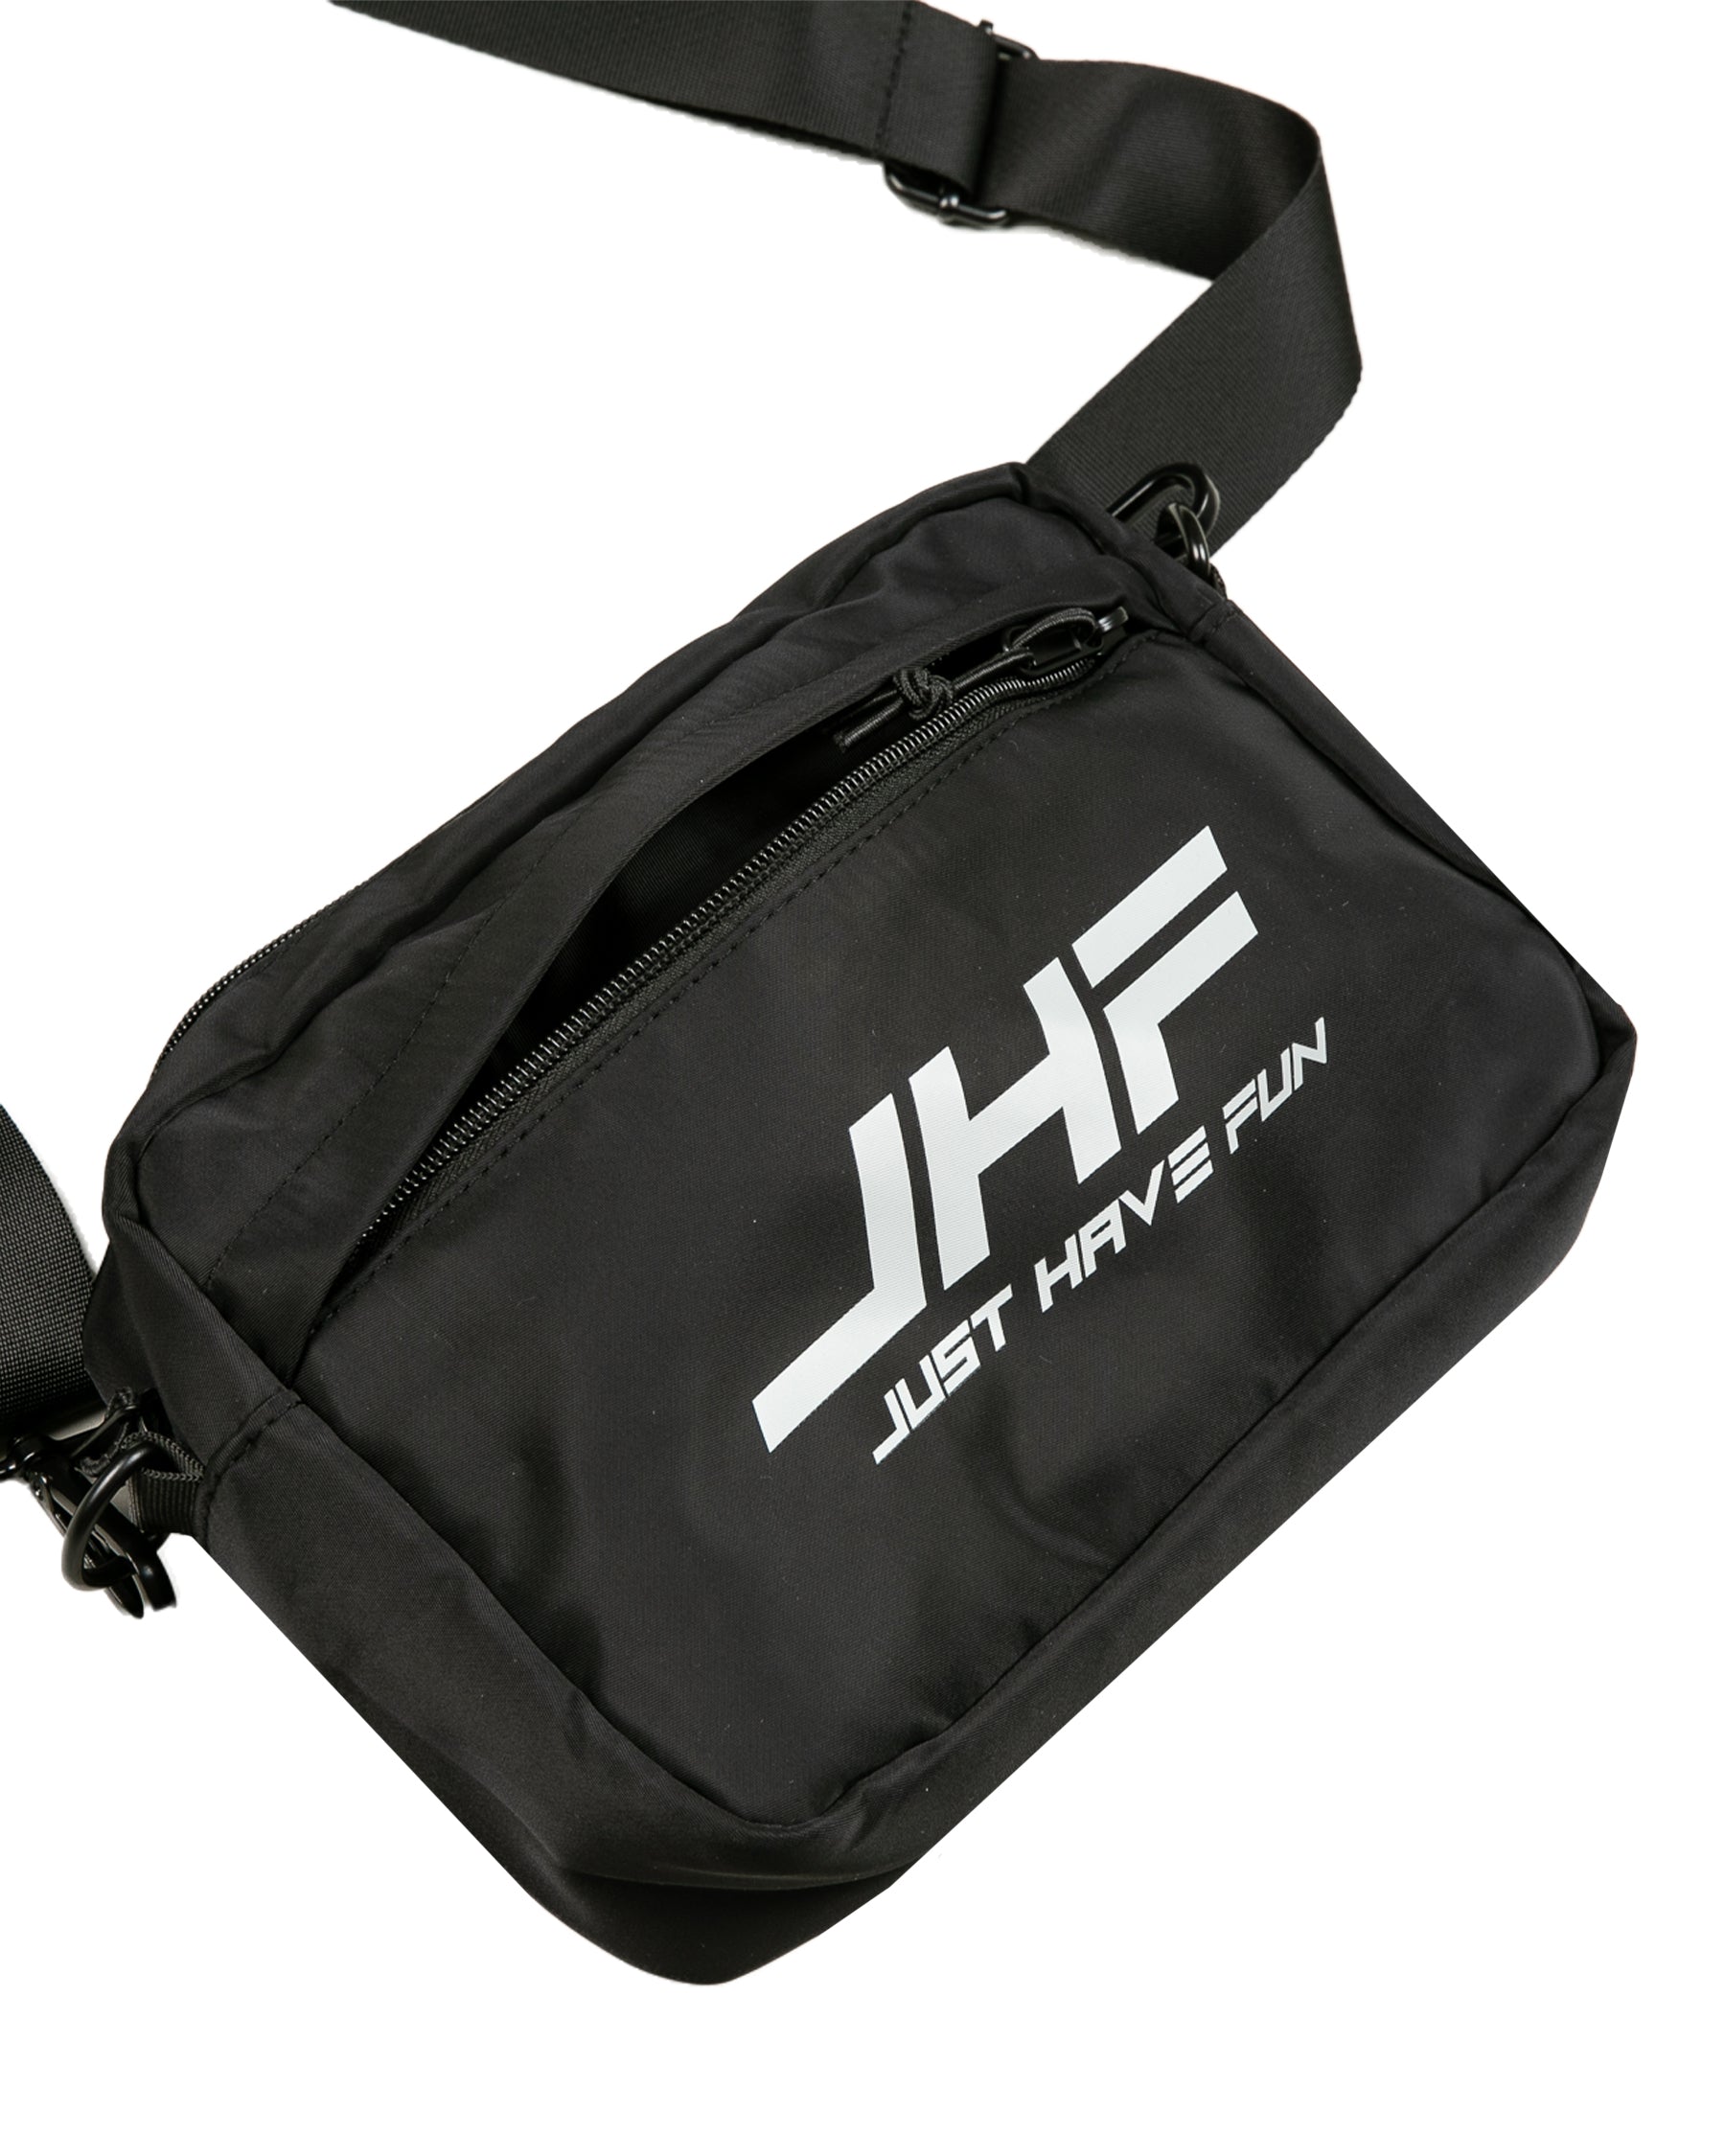 JF CREATION Sling Bag STYLISH AND FASHIONABLE Sling Bag For